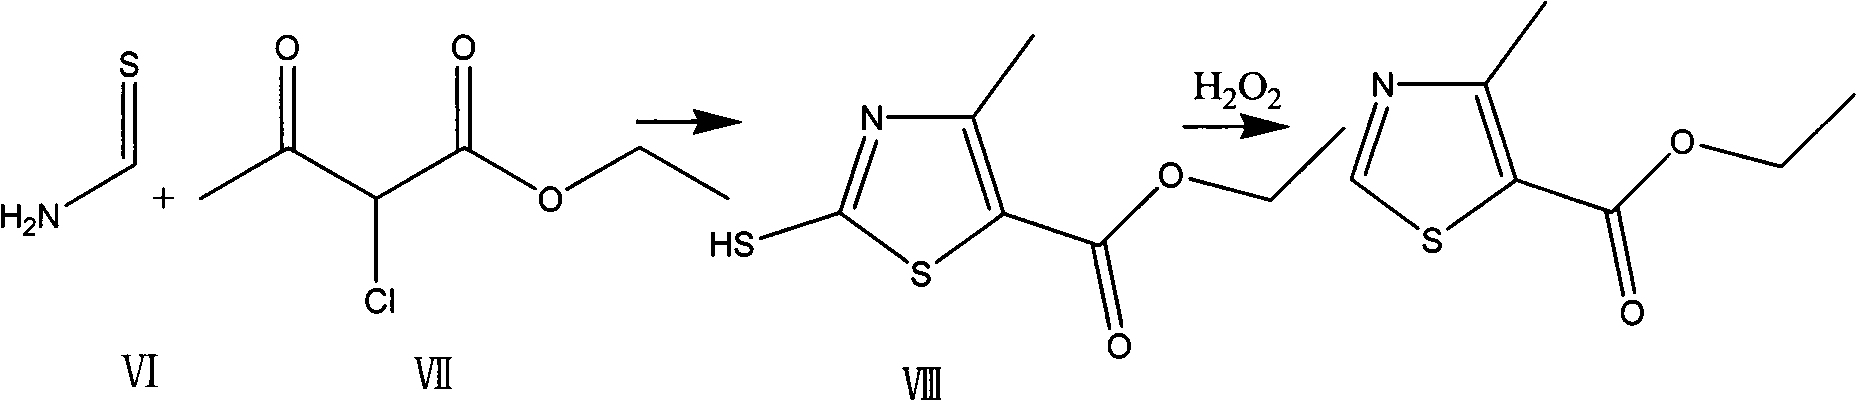 Preparation method of thiazole compounds